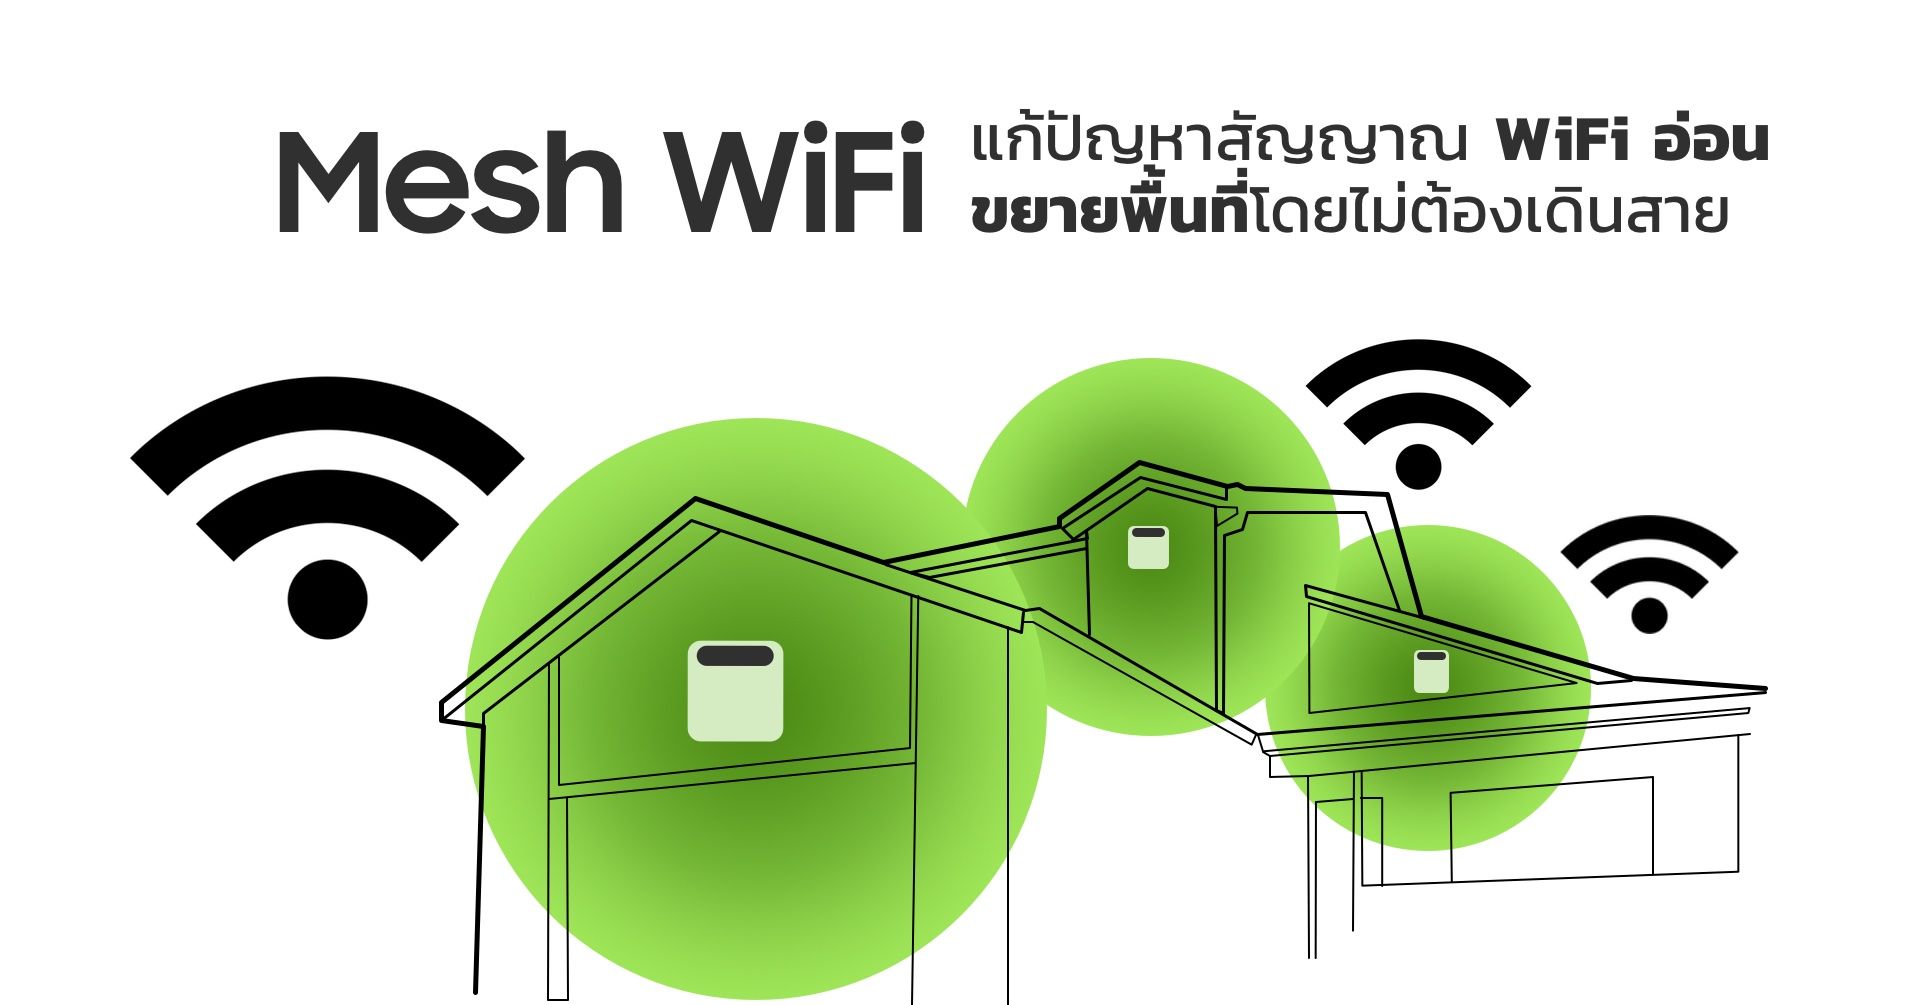 Mesh WiFi คืออะไร | ขยายสัญญาณไวไฟให้ครอบคลุมทั่วบ้าน แก้ปัญหาแพ็กเกจแรง แต่เน็ตไม่วิ่ง